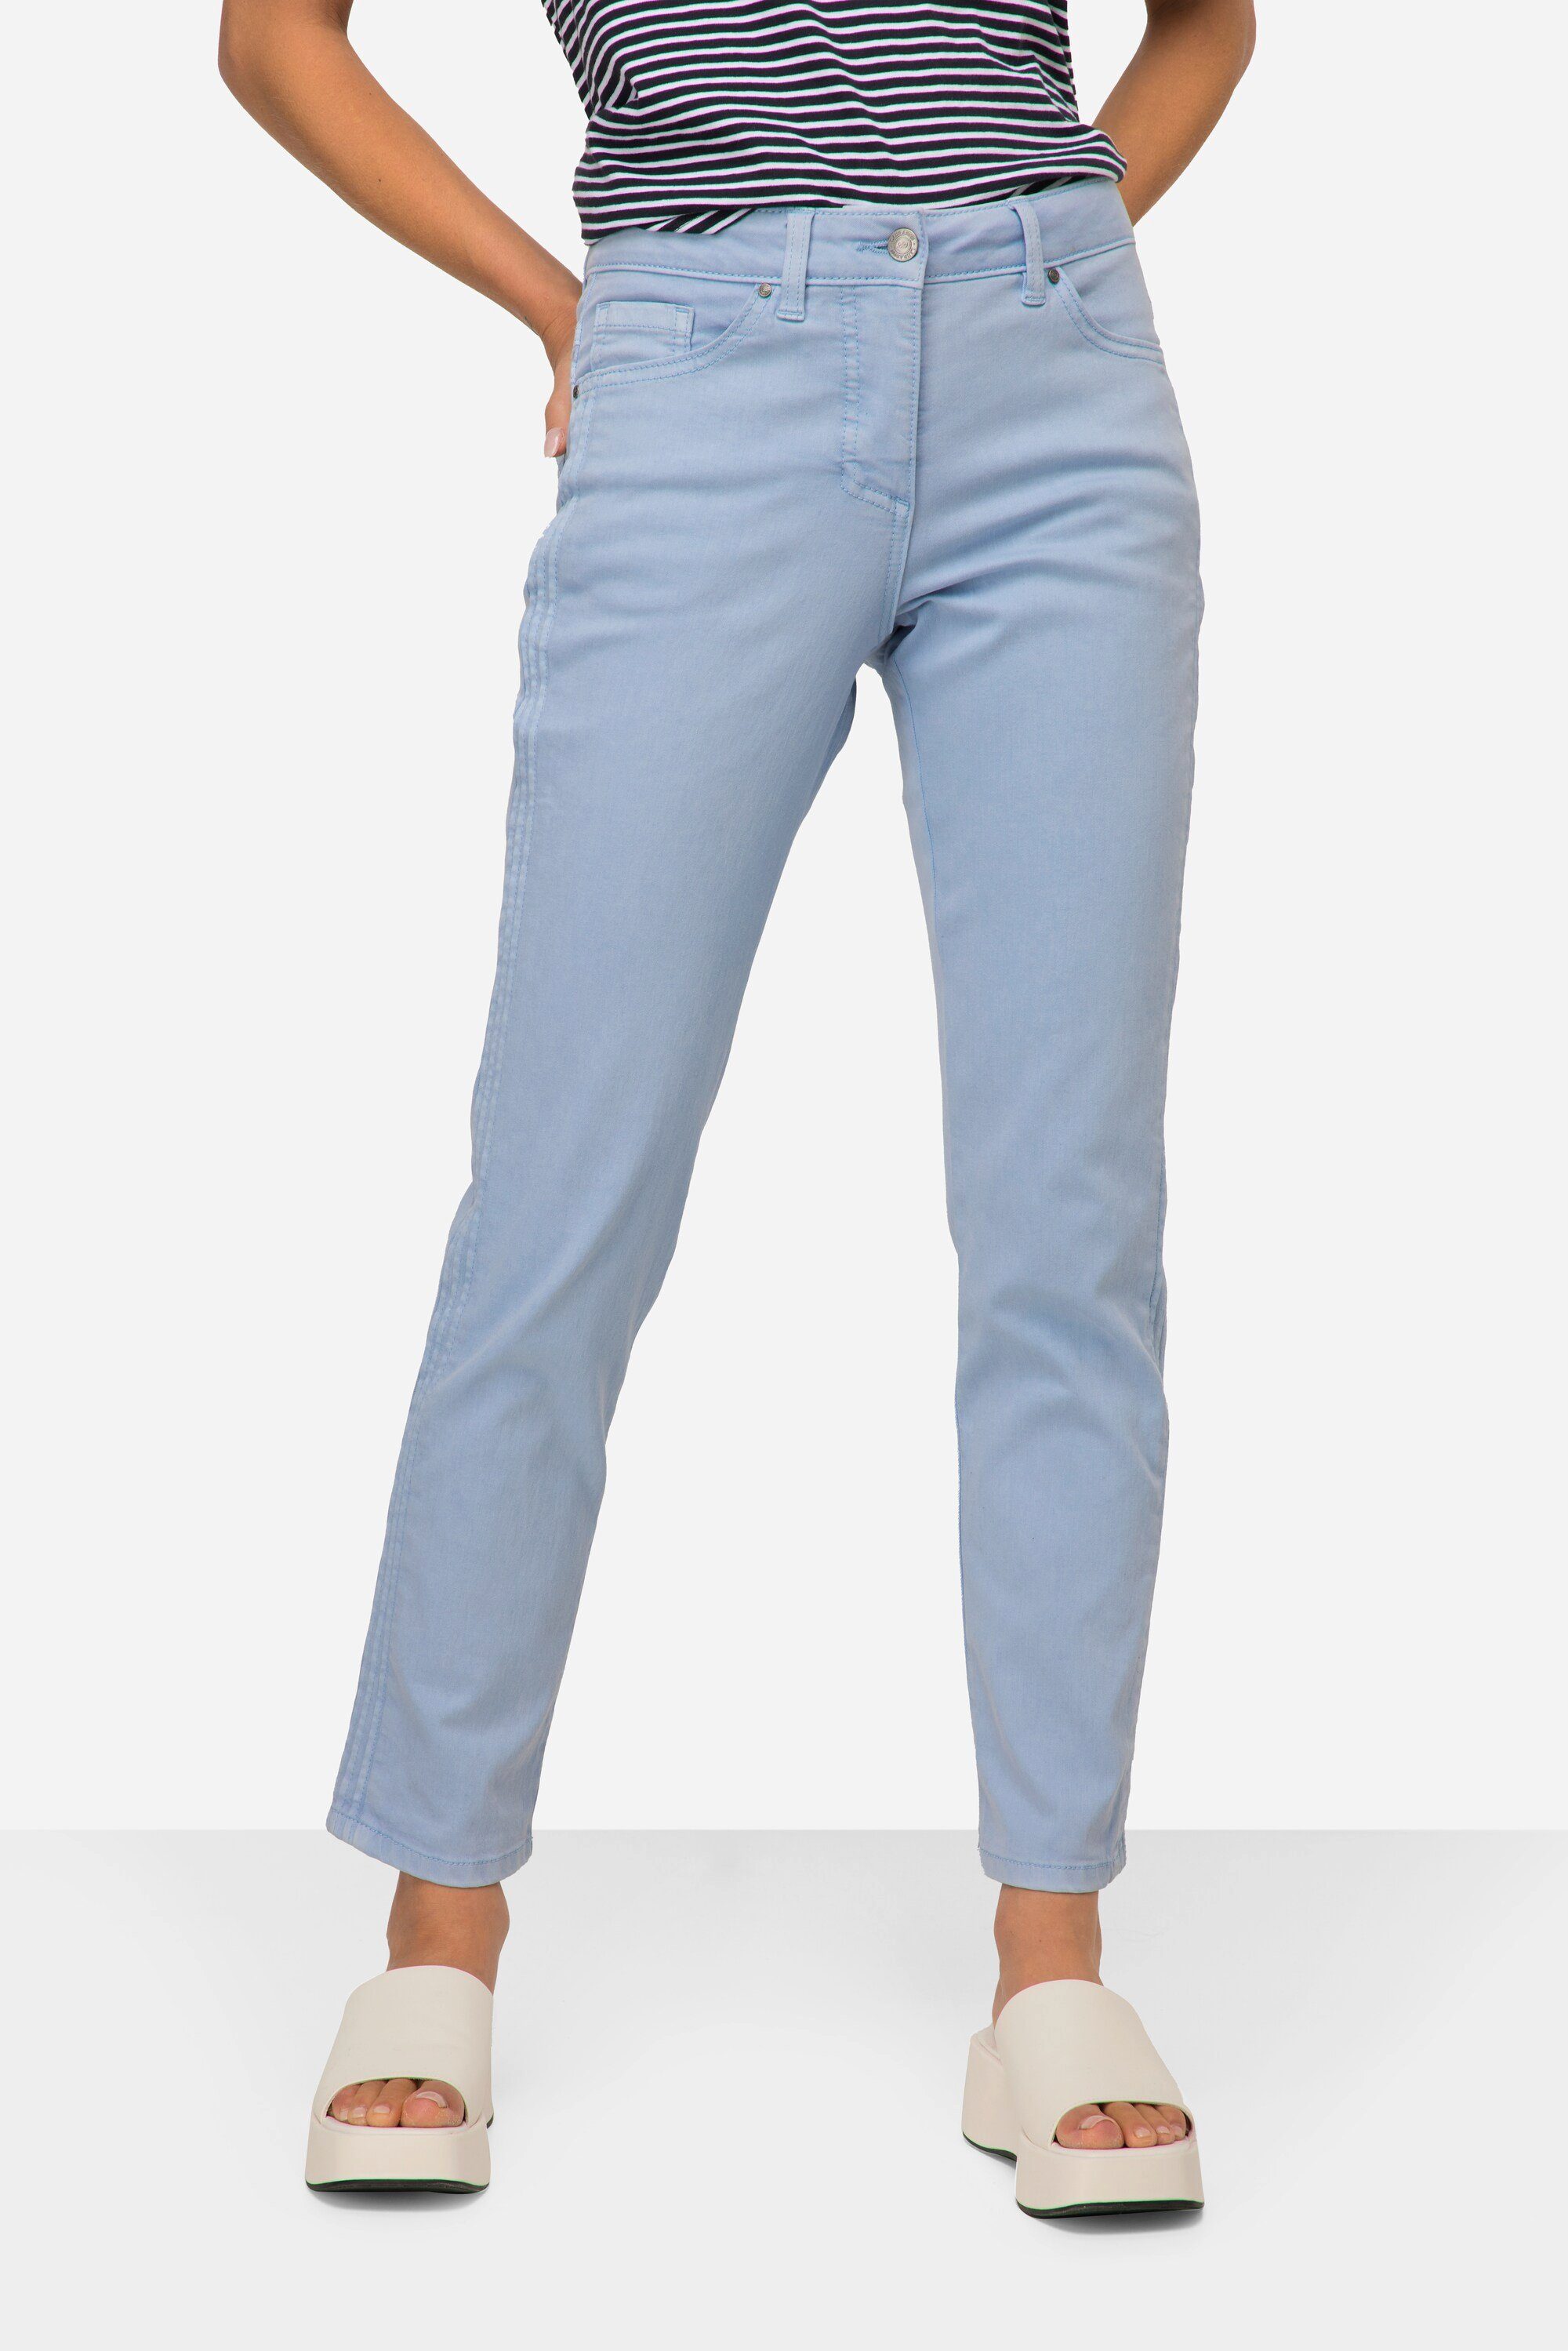 Laurasøn 5-Pocket-Jeans Jeans Tina gerade Passform seitliche Zierfalten hellblau